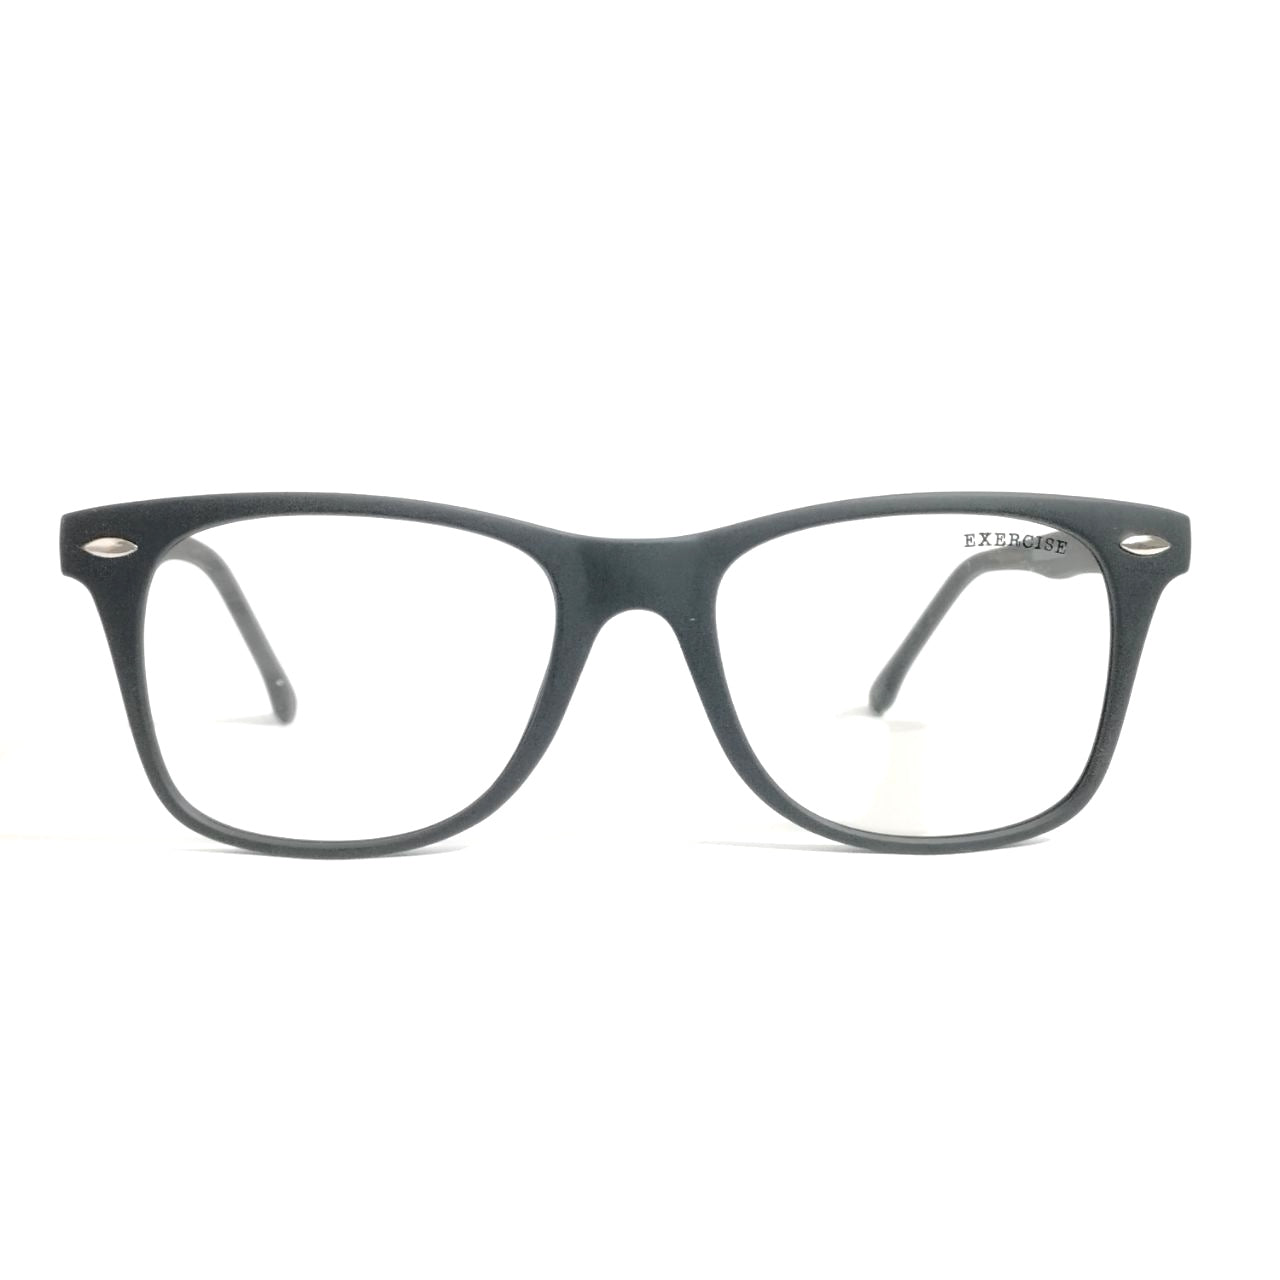 Photochromic Glasses Blue Light Blocking Glasses for Men and Women Day Night Multi-use Eyeglasses